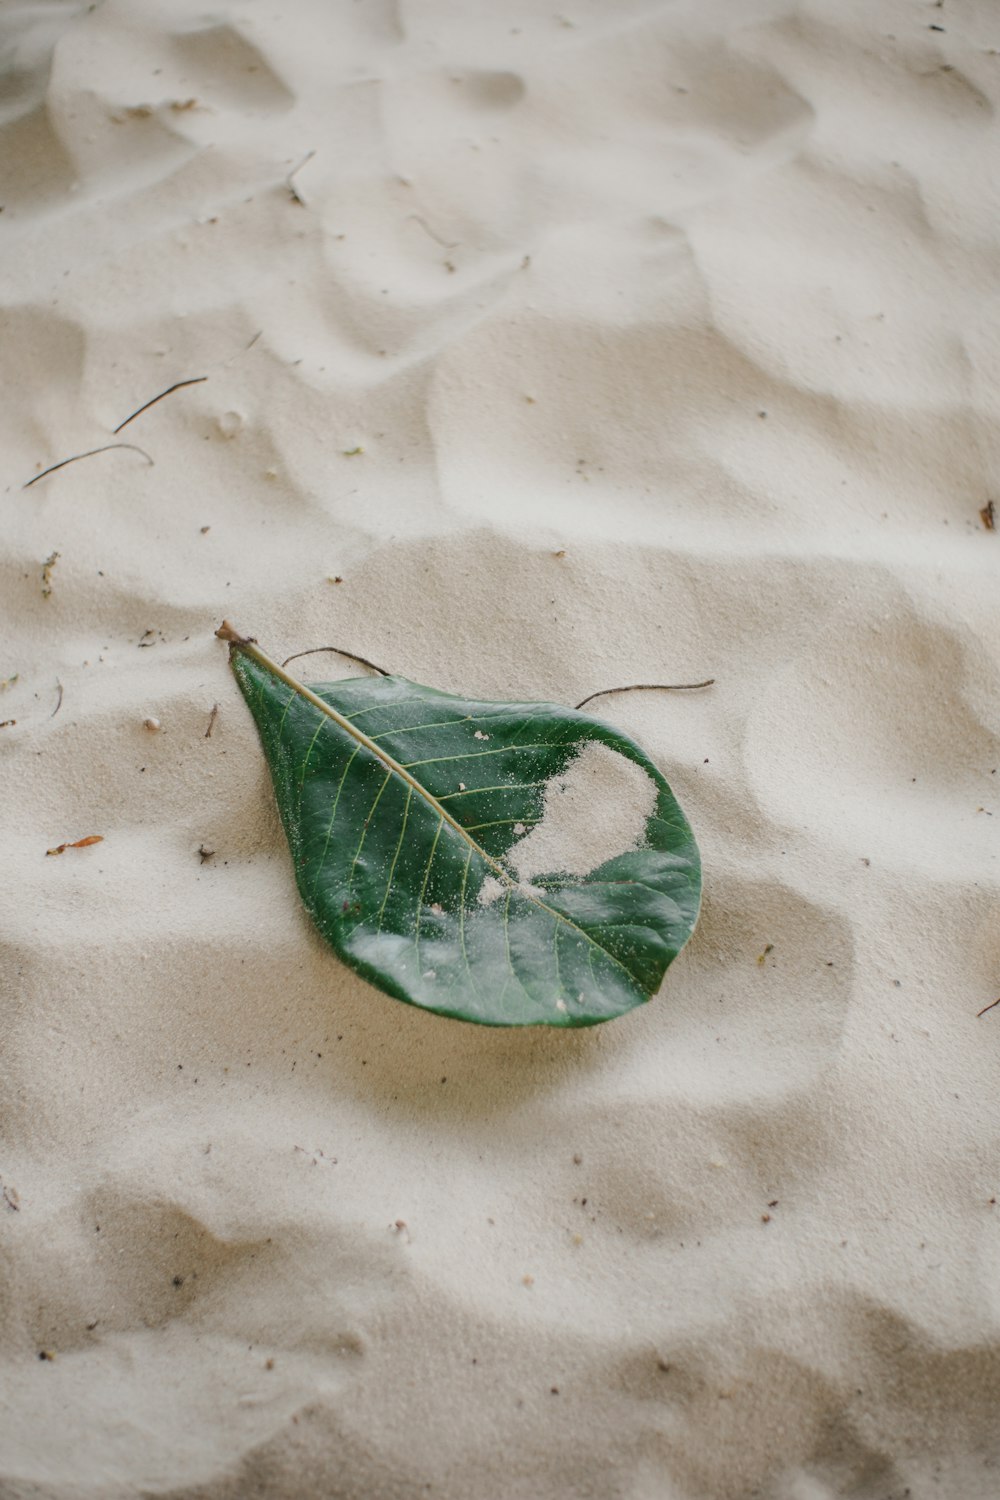 모래사장 위에 놓인 초록색 잎사귀